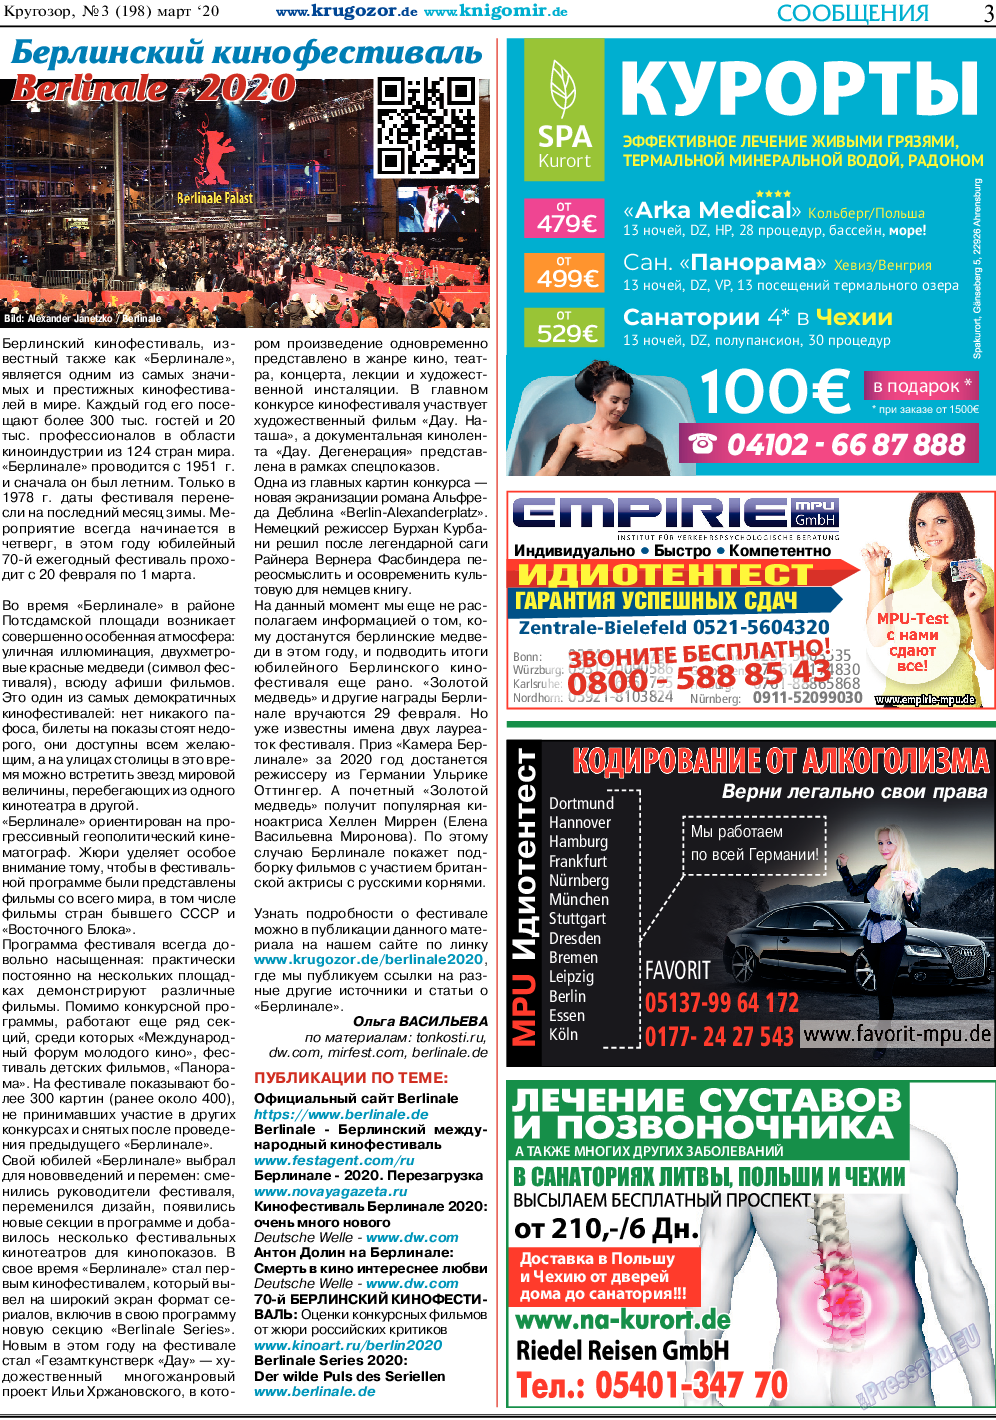 Кругозор, газета. 2020 №3 стр.3